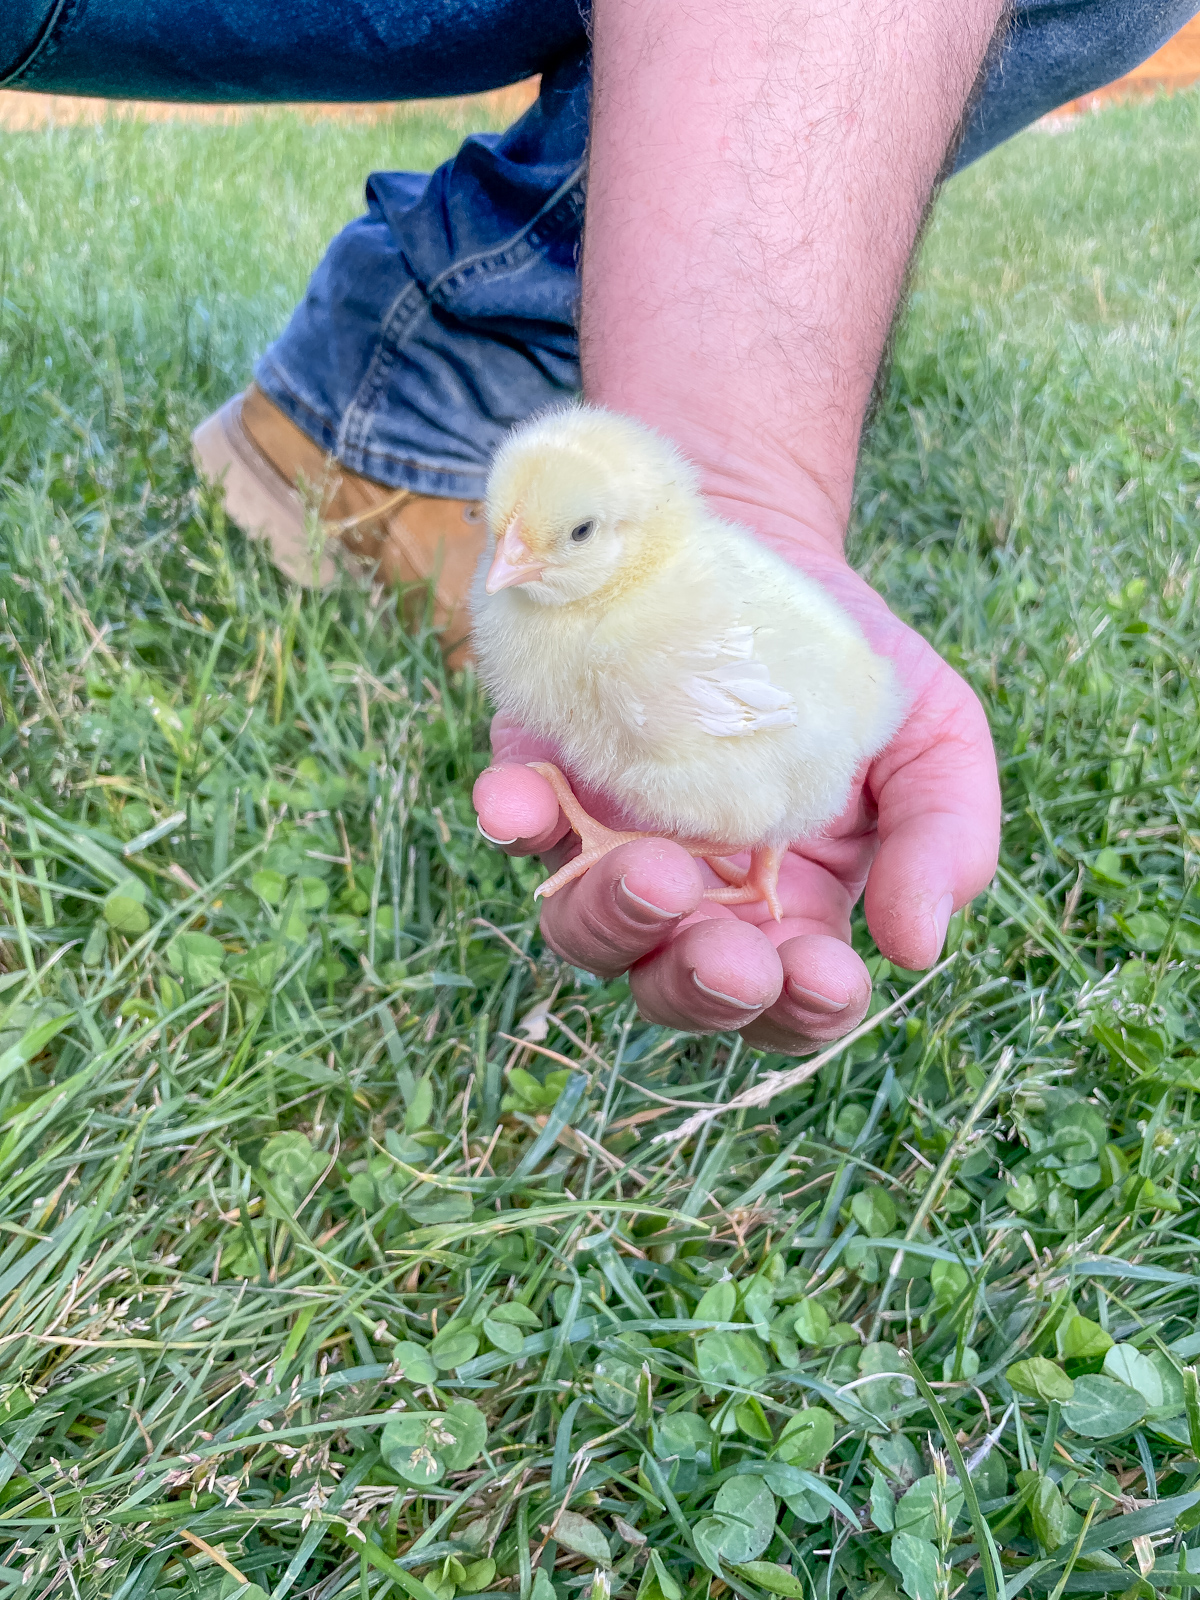 Baby cornish cross chick